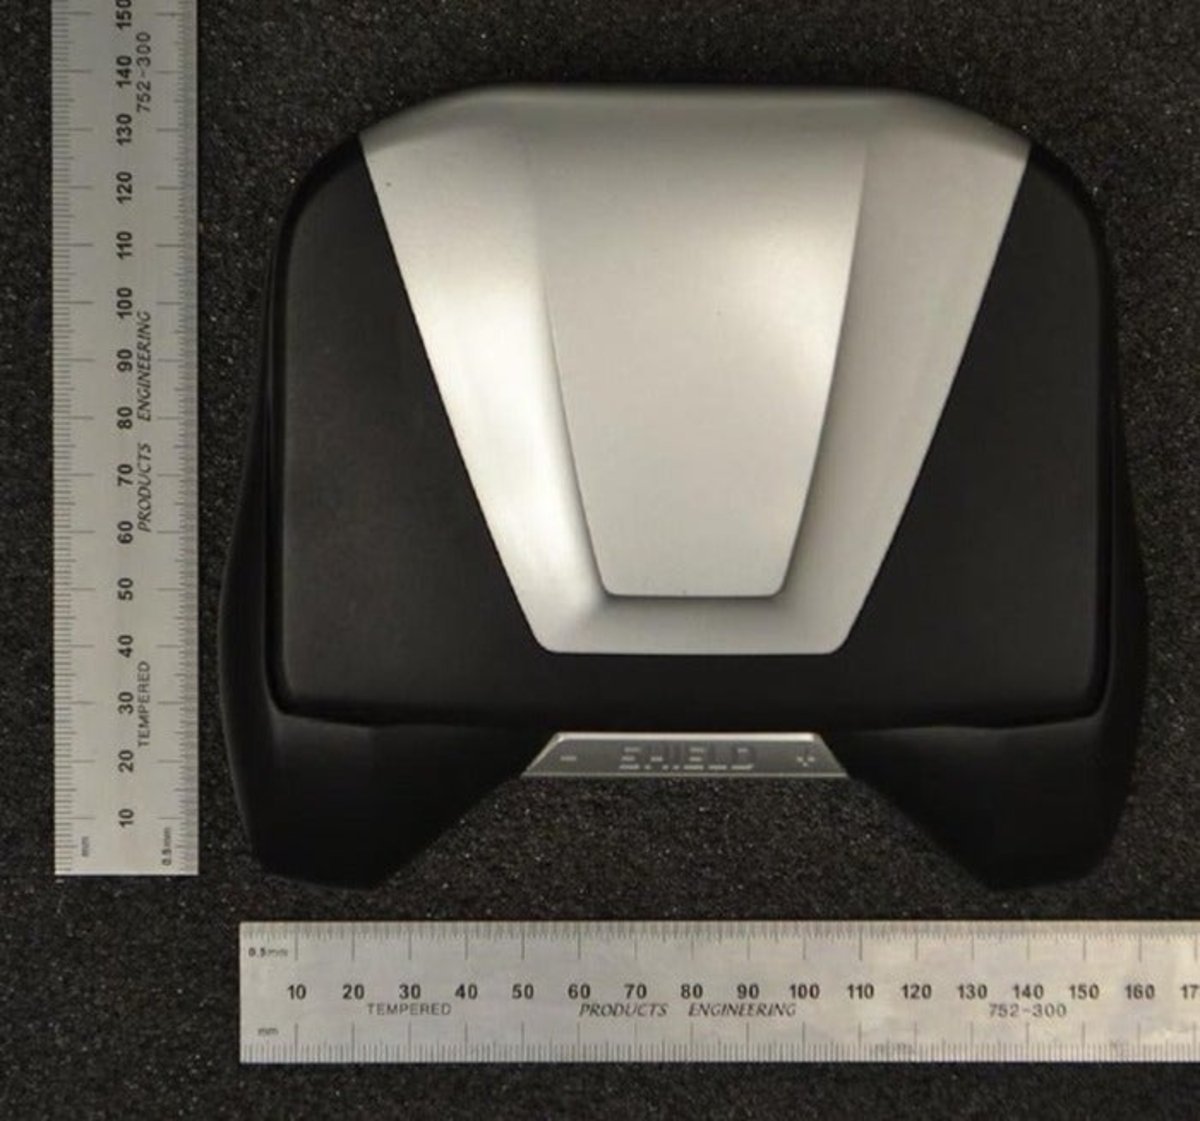 Fotografías filtradas muestran cómo habría sido el Shield Portable 2 de Nvidia